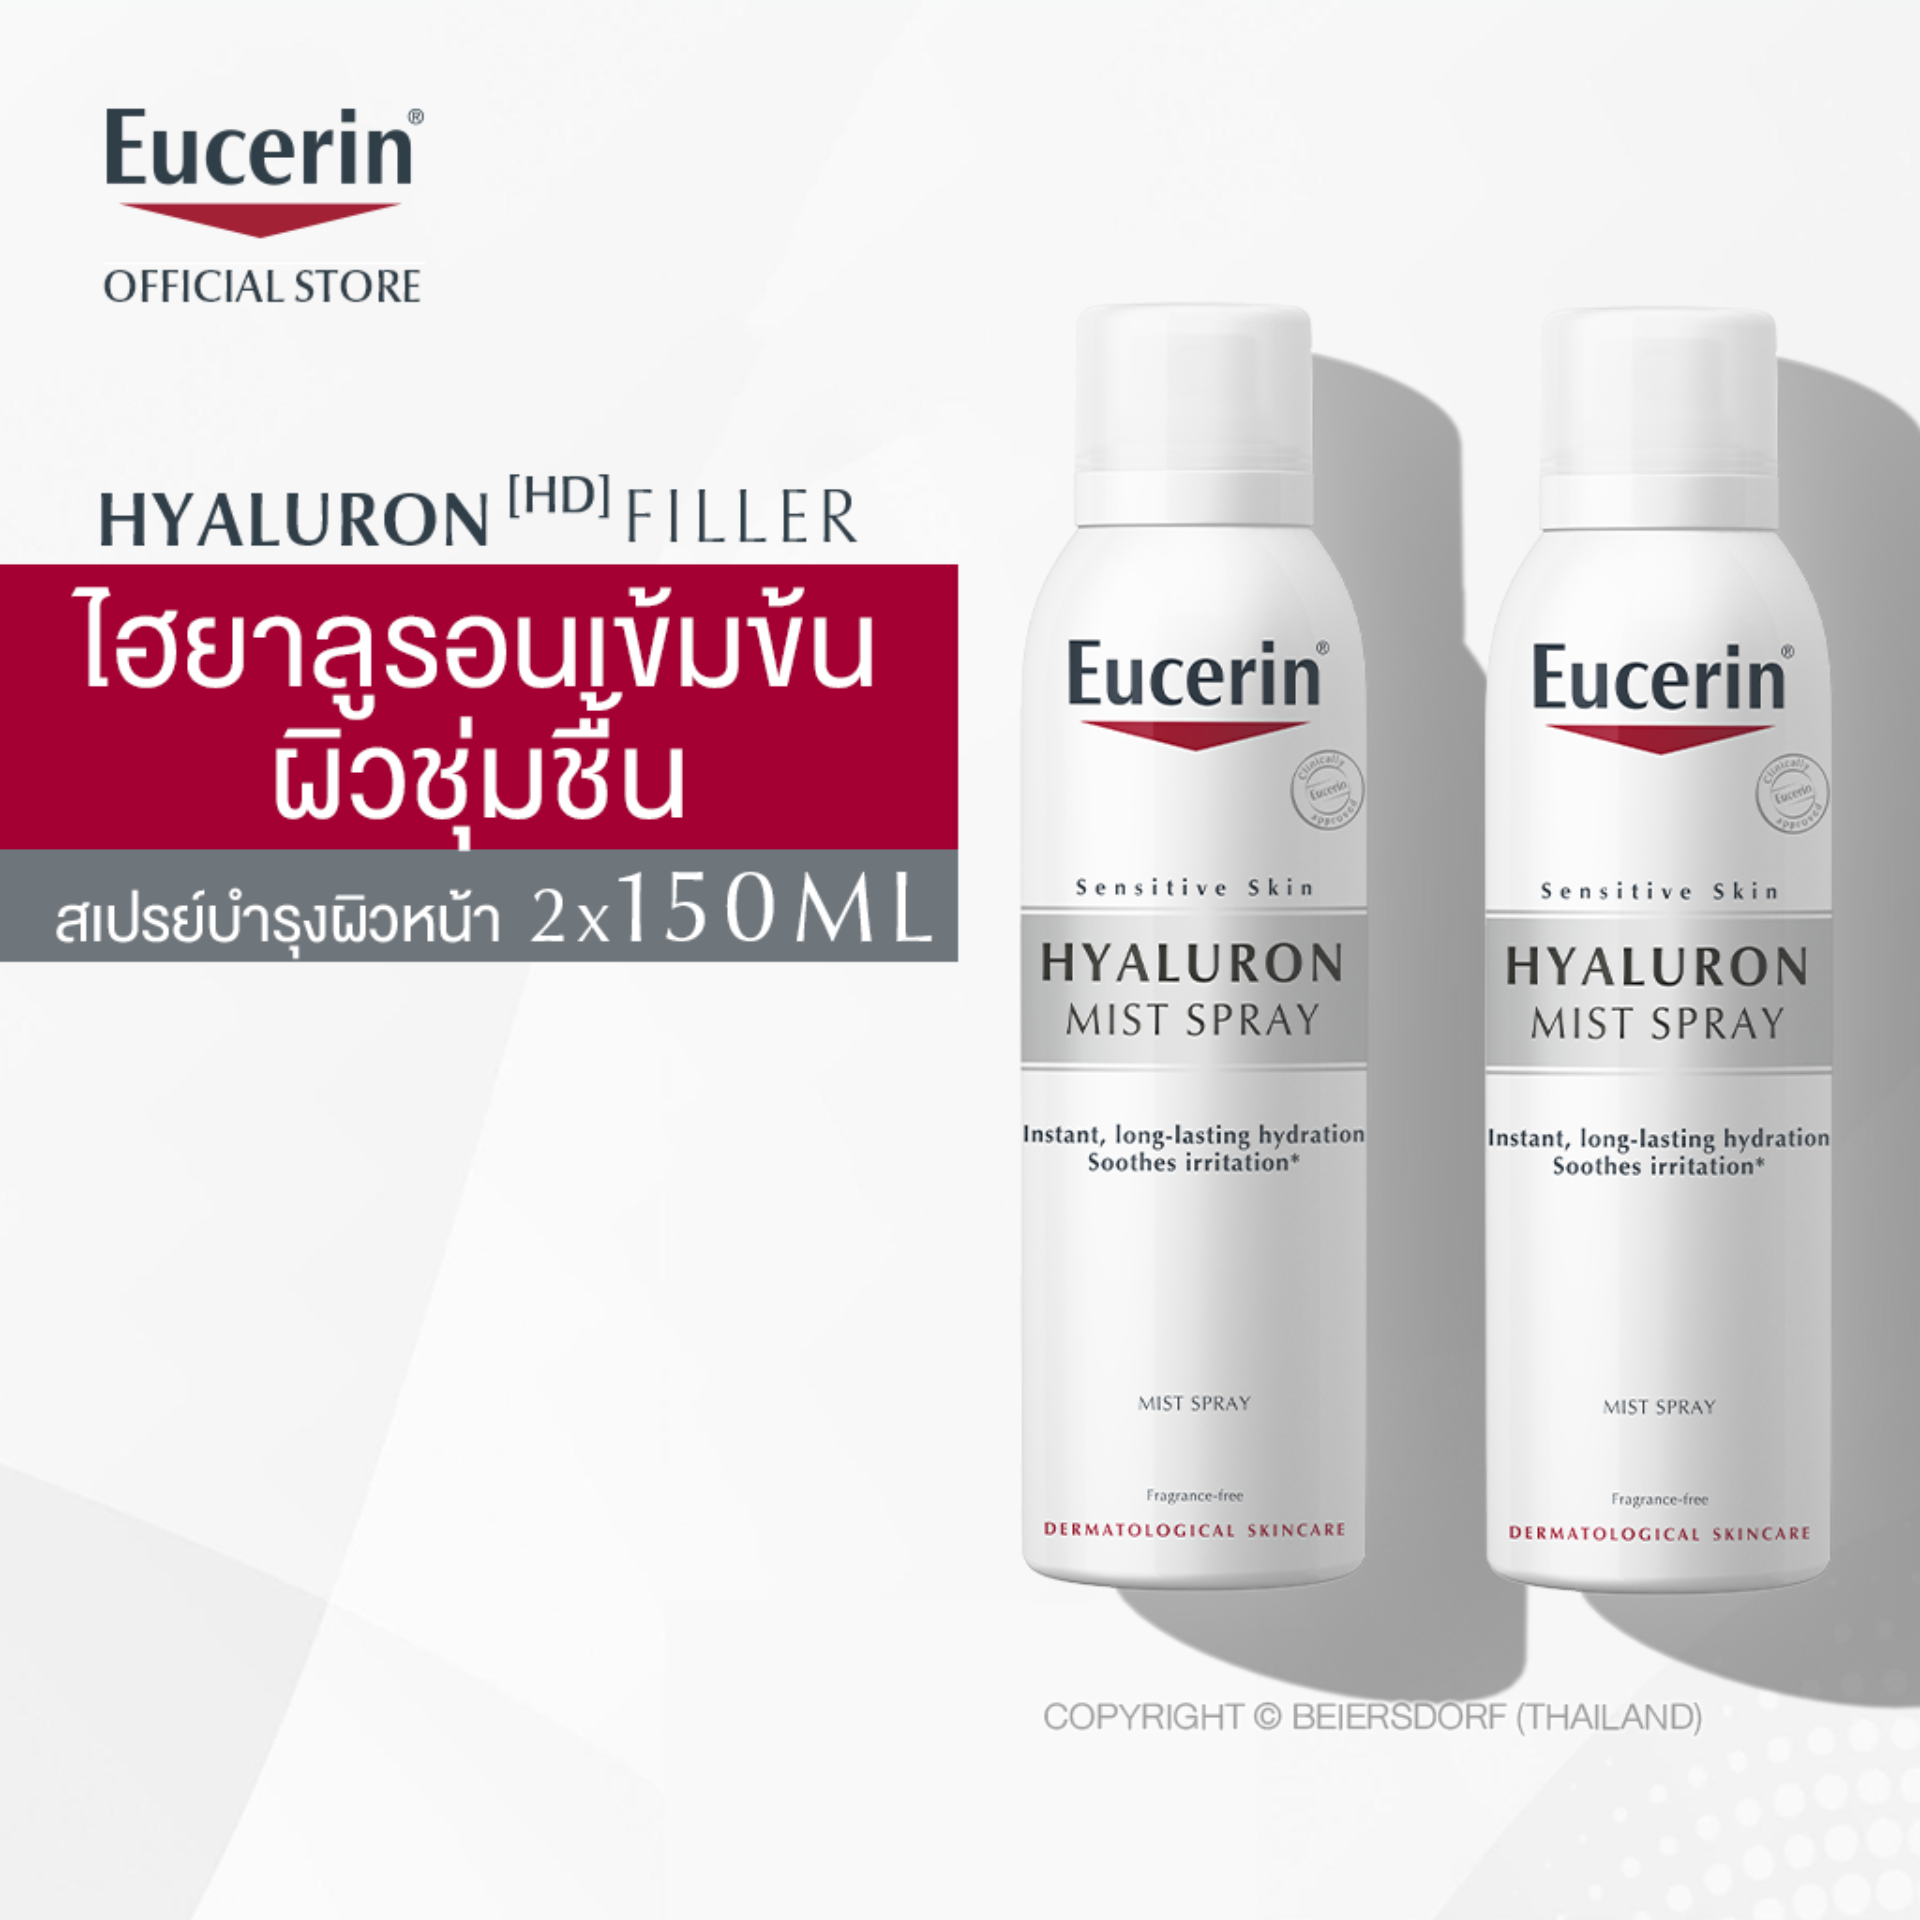 [เซ็ตสุดคุ้ม] Eucerin Hyaluron Mist Spray Double Pack 2x150ml  ยูเซอริน ไฮยาลูรอน มิสท์ สเปรย์ สเปรย์บำรุงผิวหน้าสูตรเข้มข้น 2x150มล